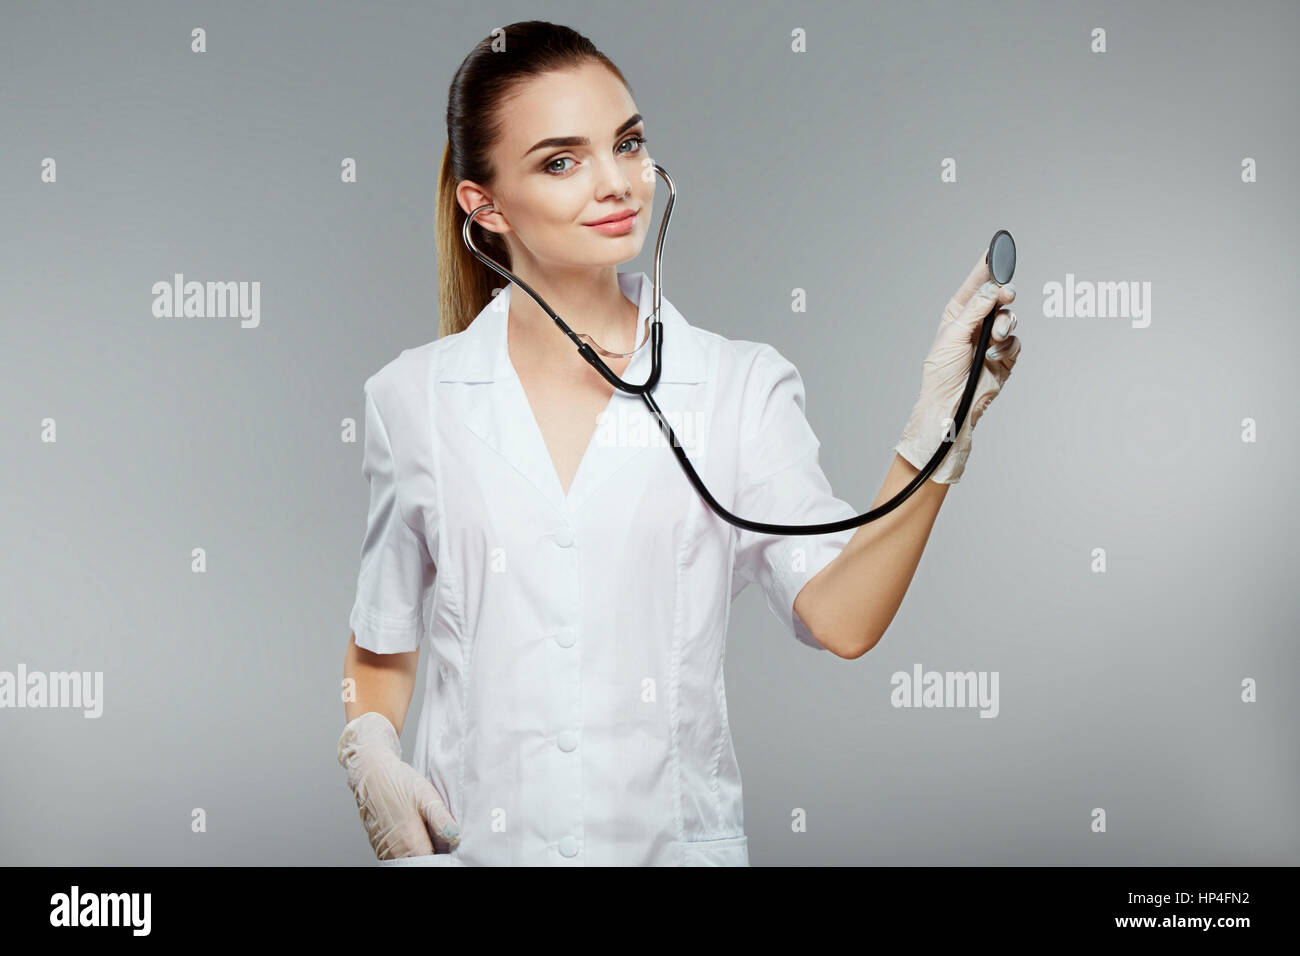 Врачи про медсестер. Привлекательная медсестра. Красивые девушки в медицинских халатах. Красивые девушки и стетоскоп. Фотосессия в медицинском халате макияж.